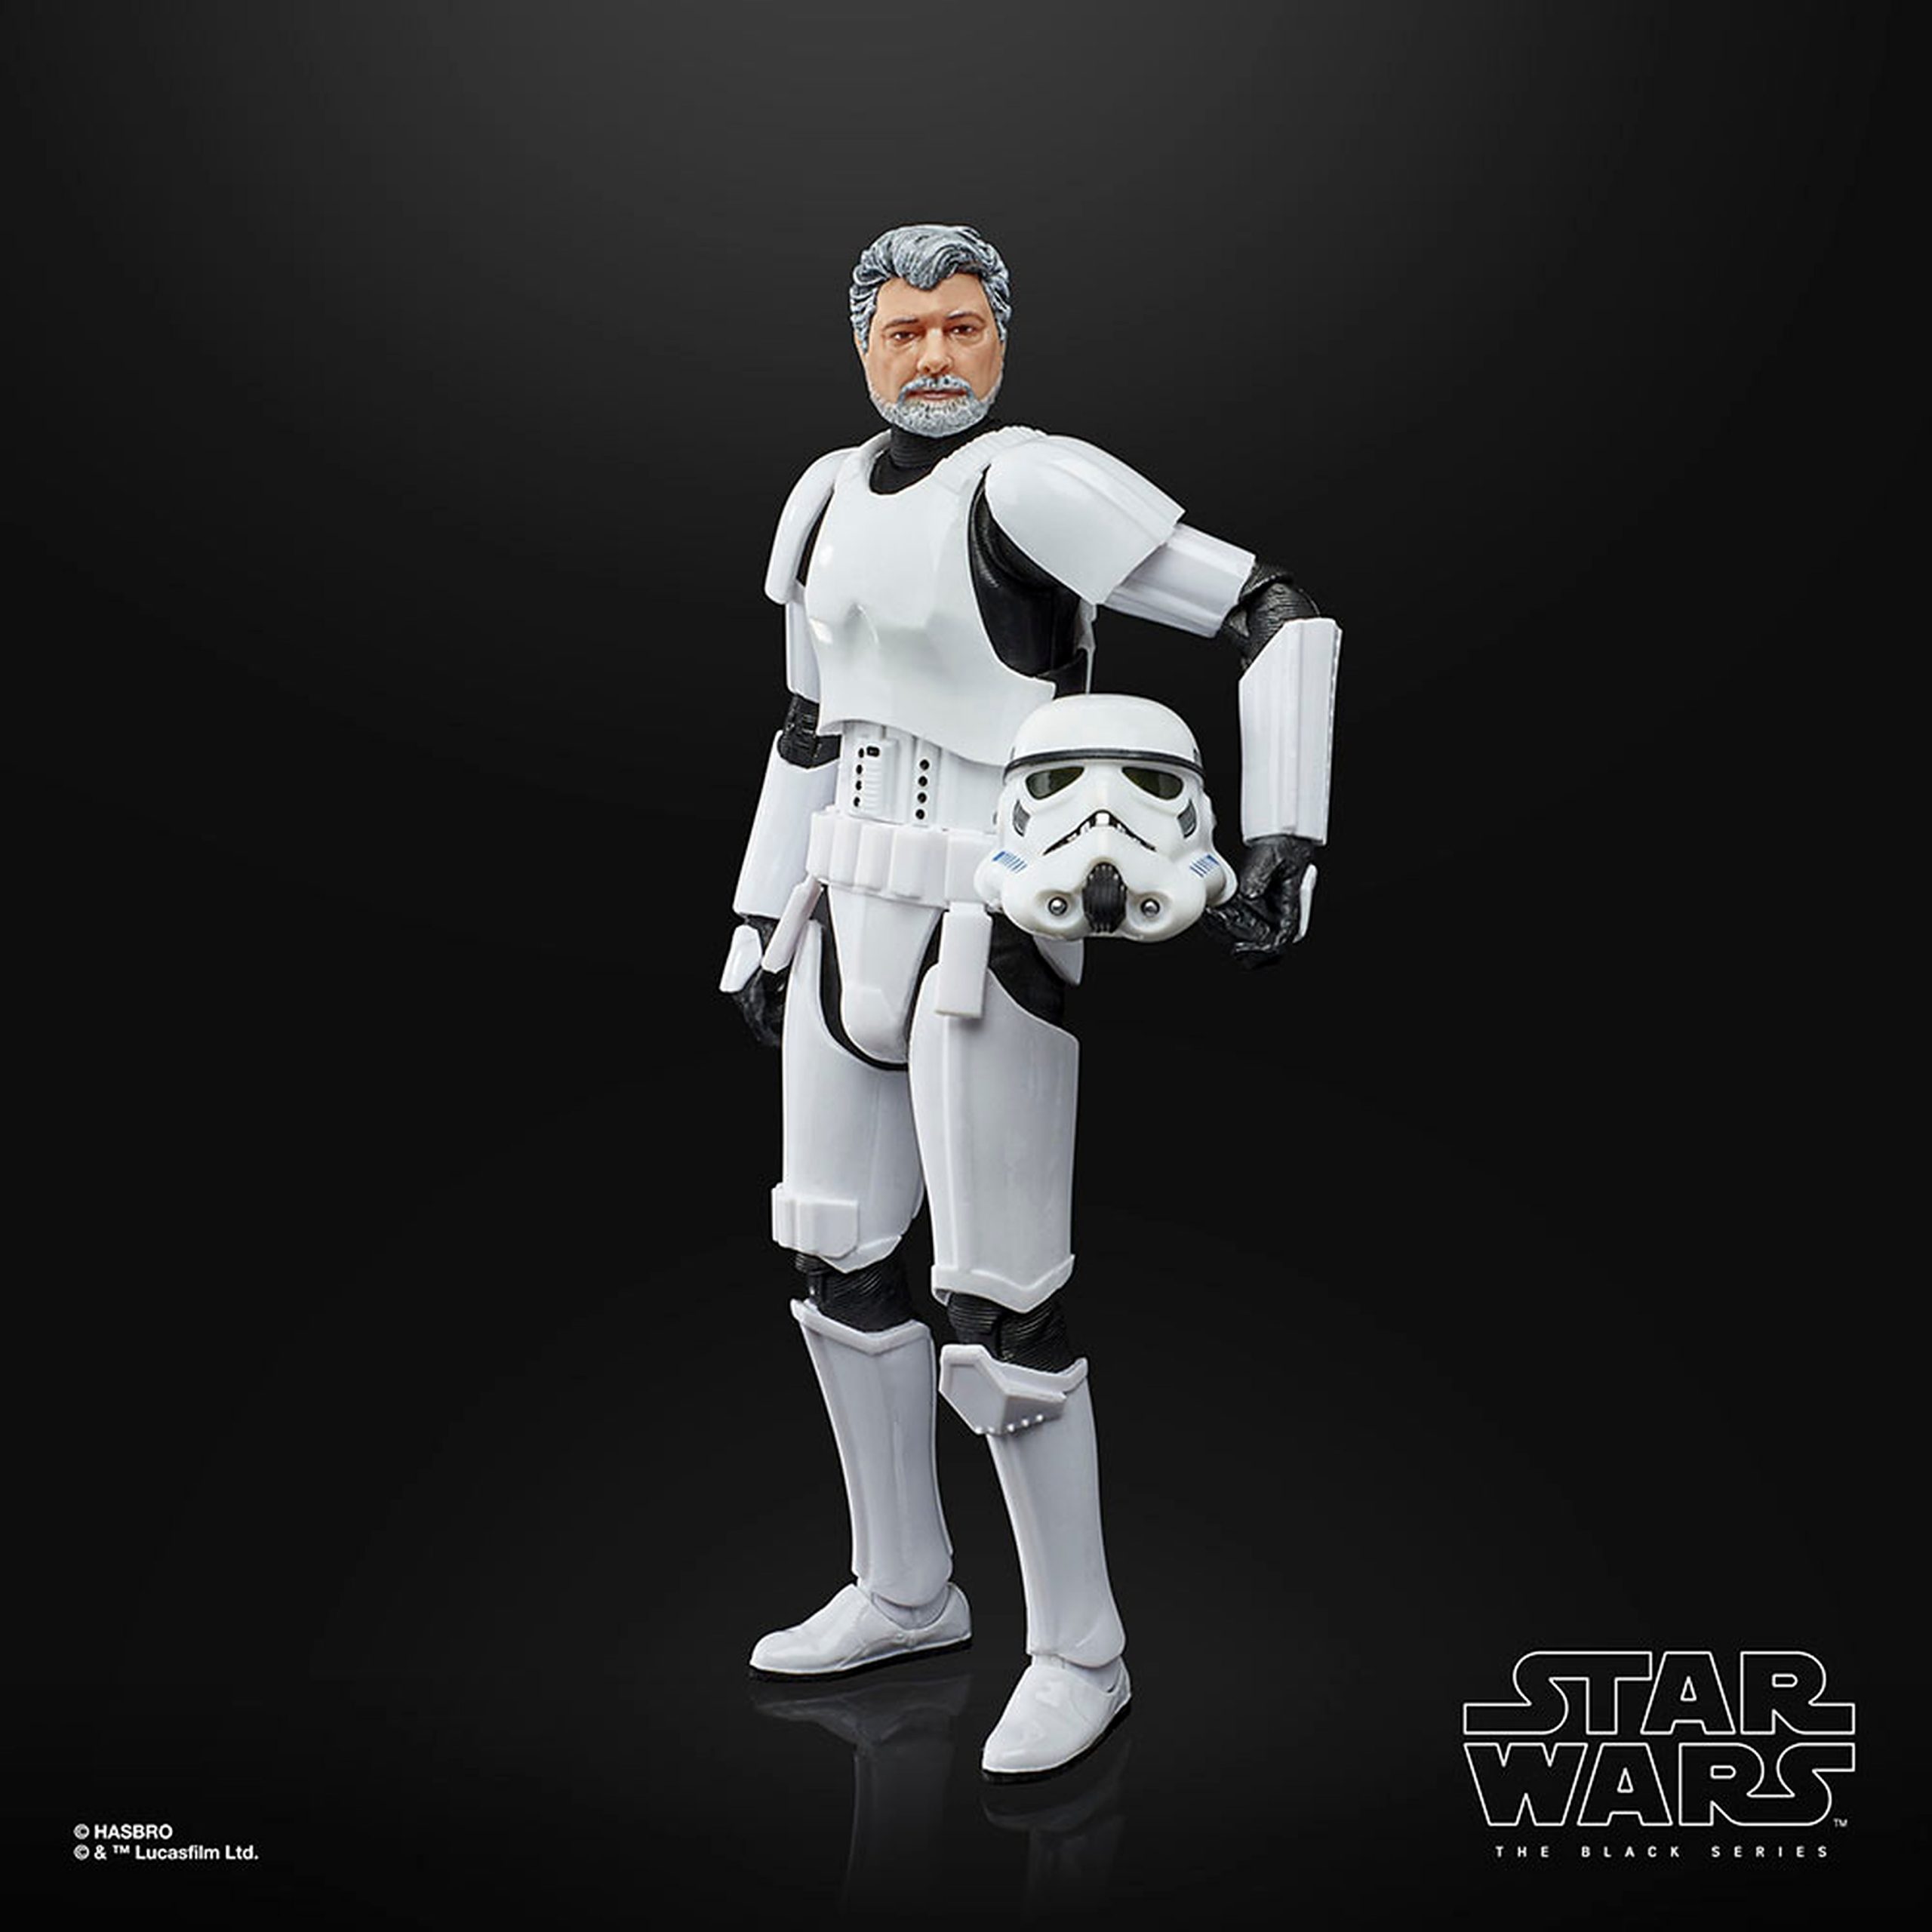 George Lucas gets his own Star Wars Black Series figure